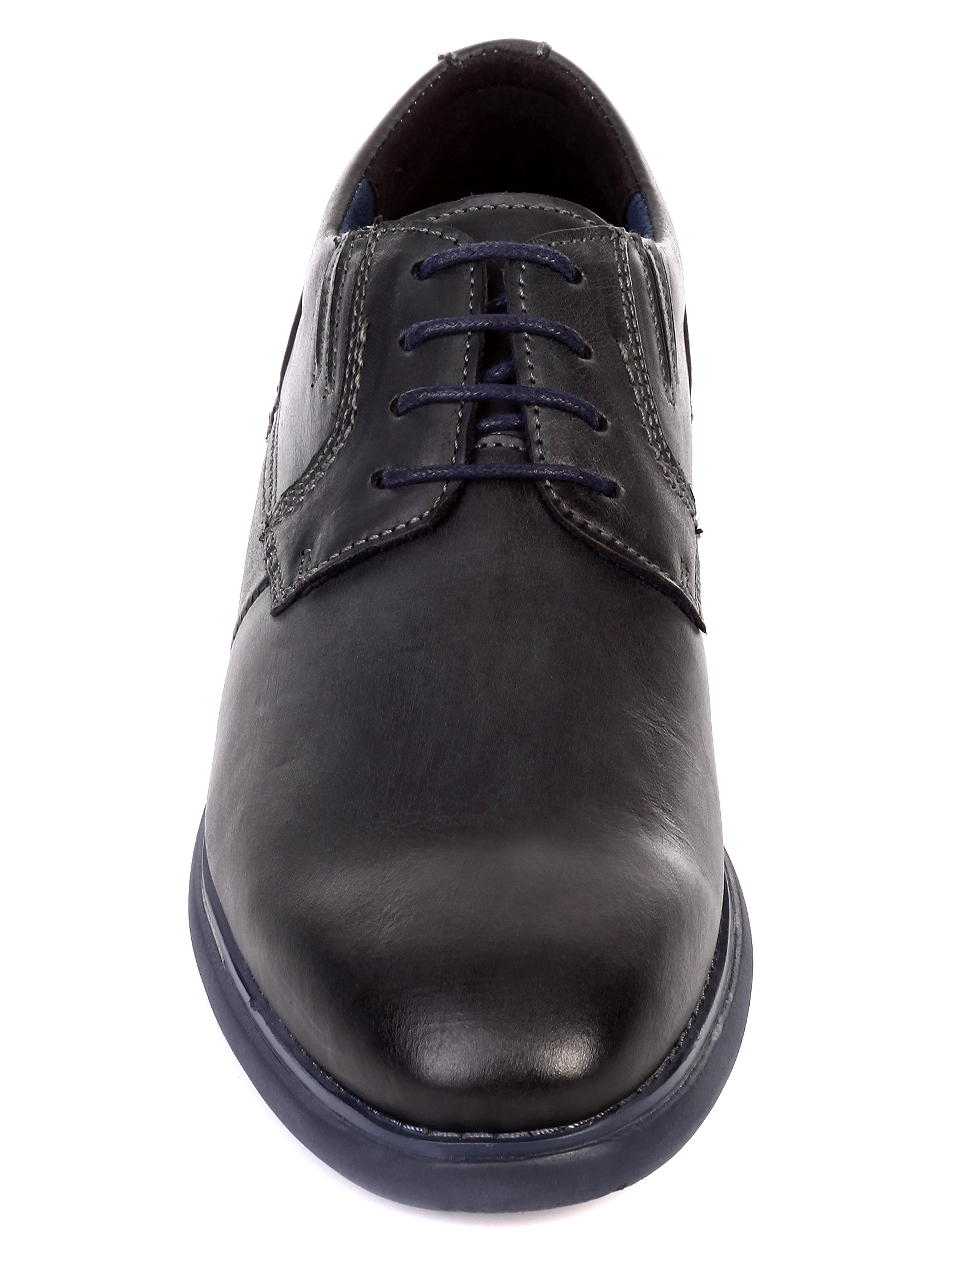 Ежедневни мъжки обувки от естествена кожа 7N-19773 navy